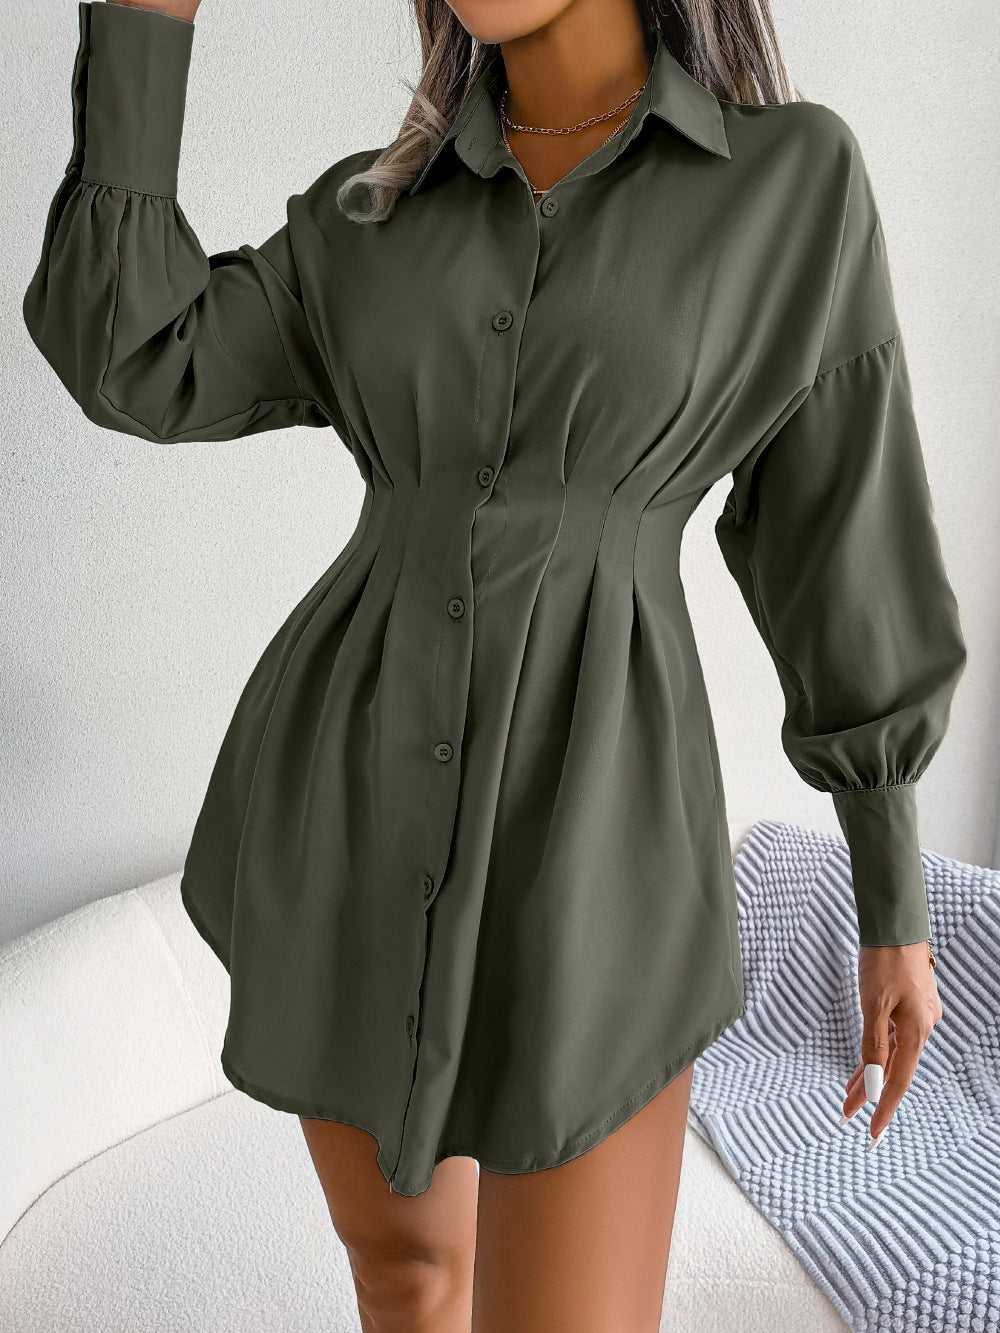 Autumn Winter Casual Lantern Sleeve Waist-Tight Asymmetric Dress Shirt Dress Women Clothing